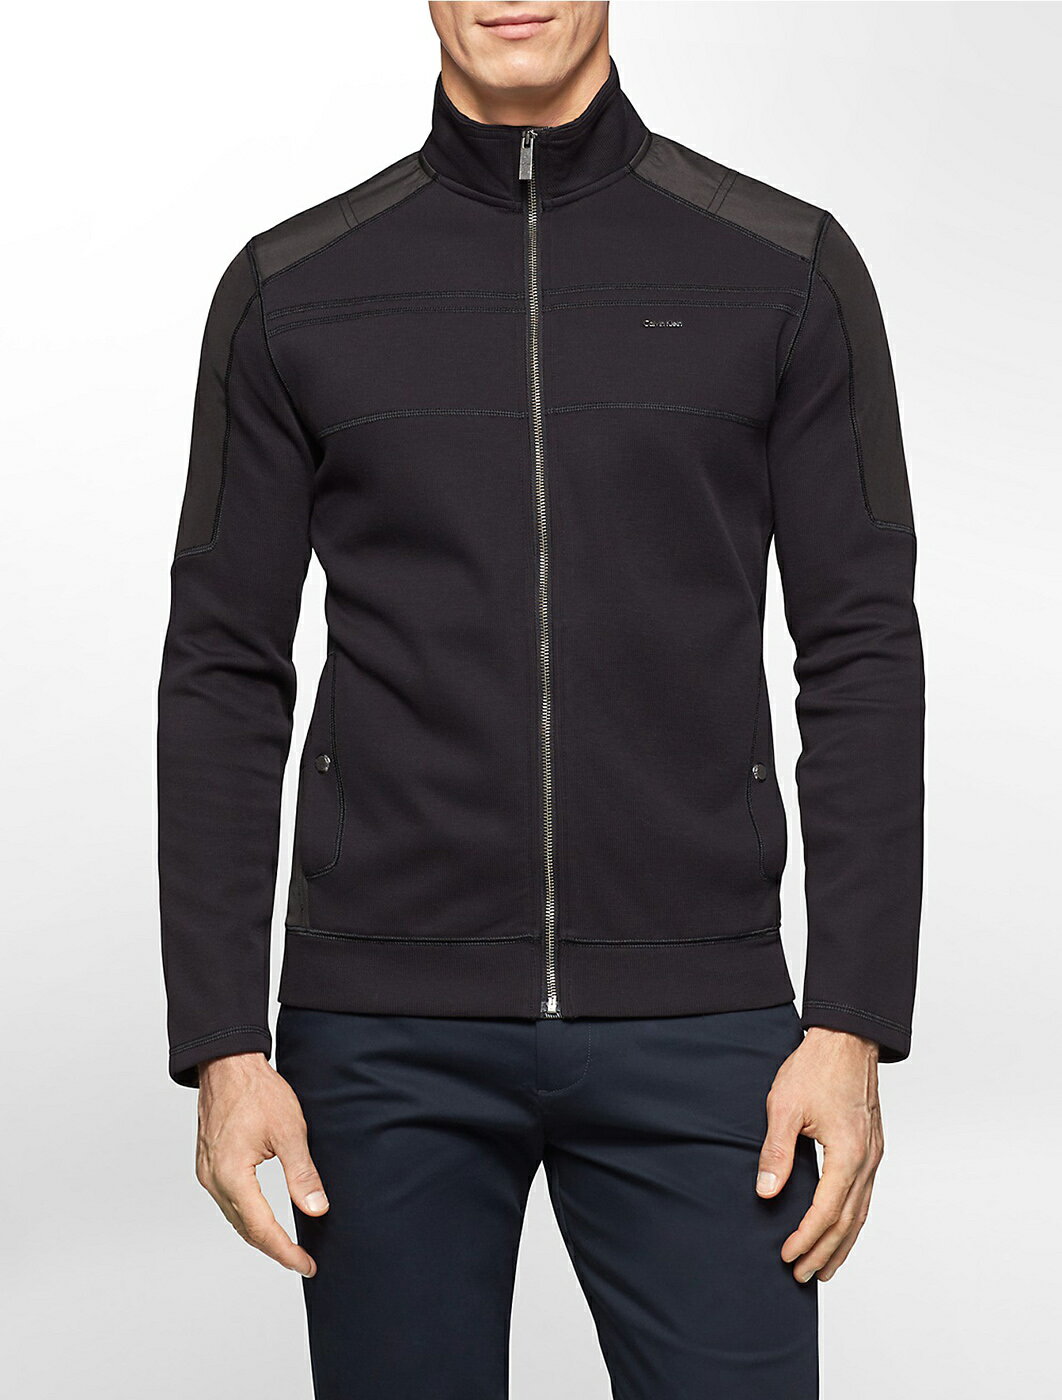 美國百分百【Calvin Klein】外套 CK 夾克 立領 騎士 尼龍 針織 拼接 修身 黑色 L號 F986